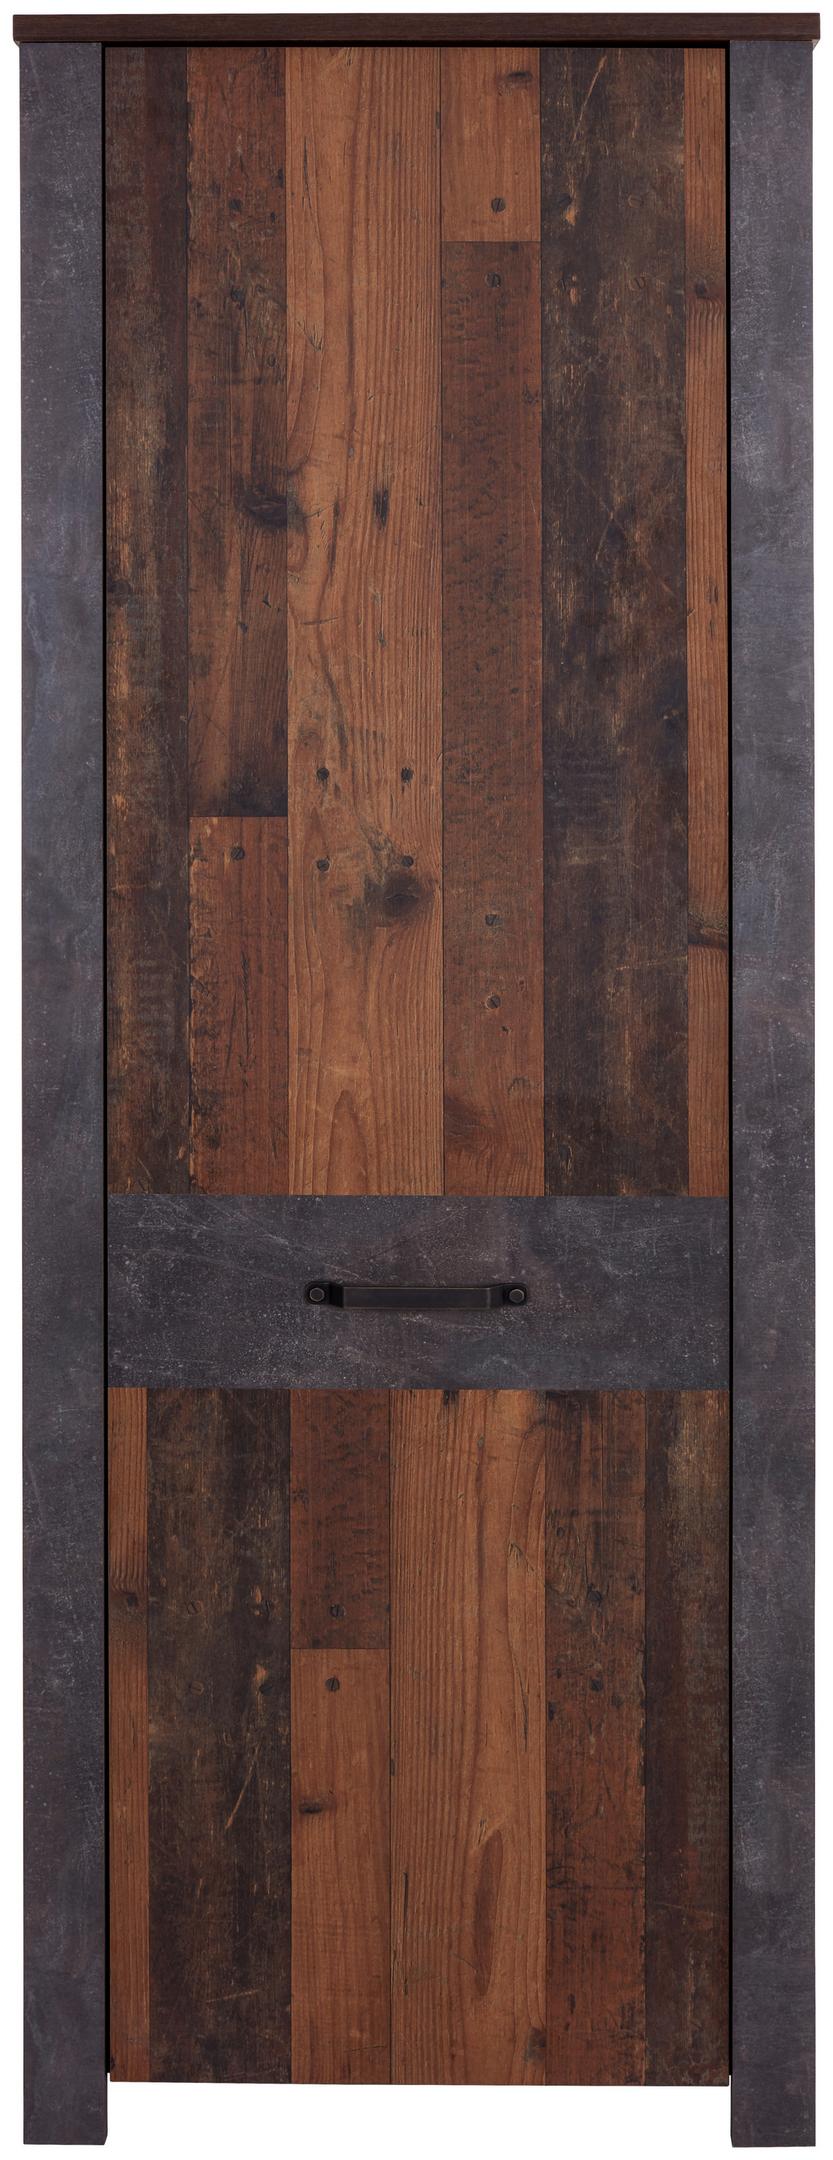 Skříň Na Oděv Ontario - šedá/barvy dubu, Trend, kompozitní dřevo/plast (68,4/200/37cm) - Ondega